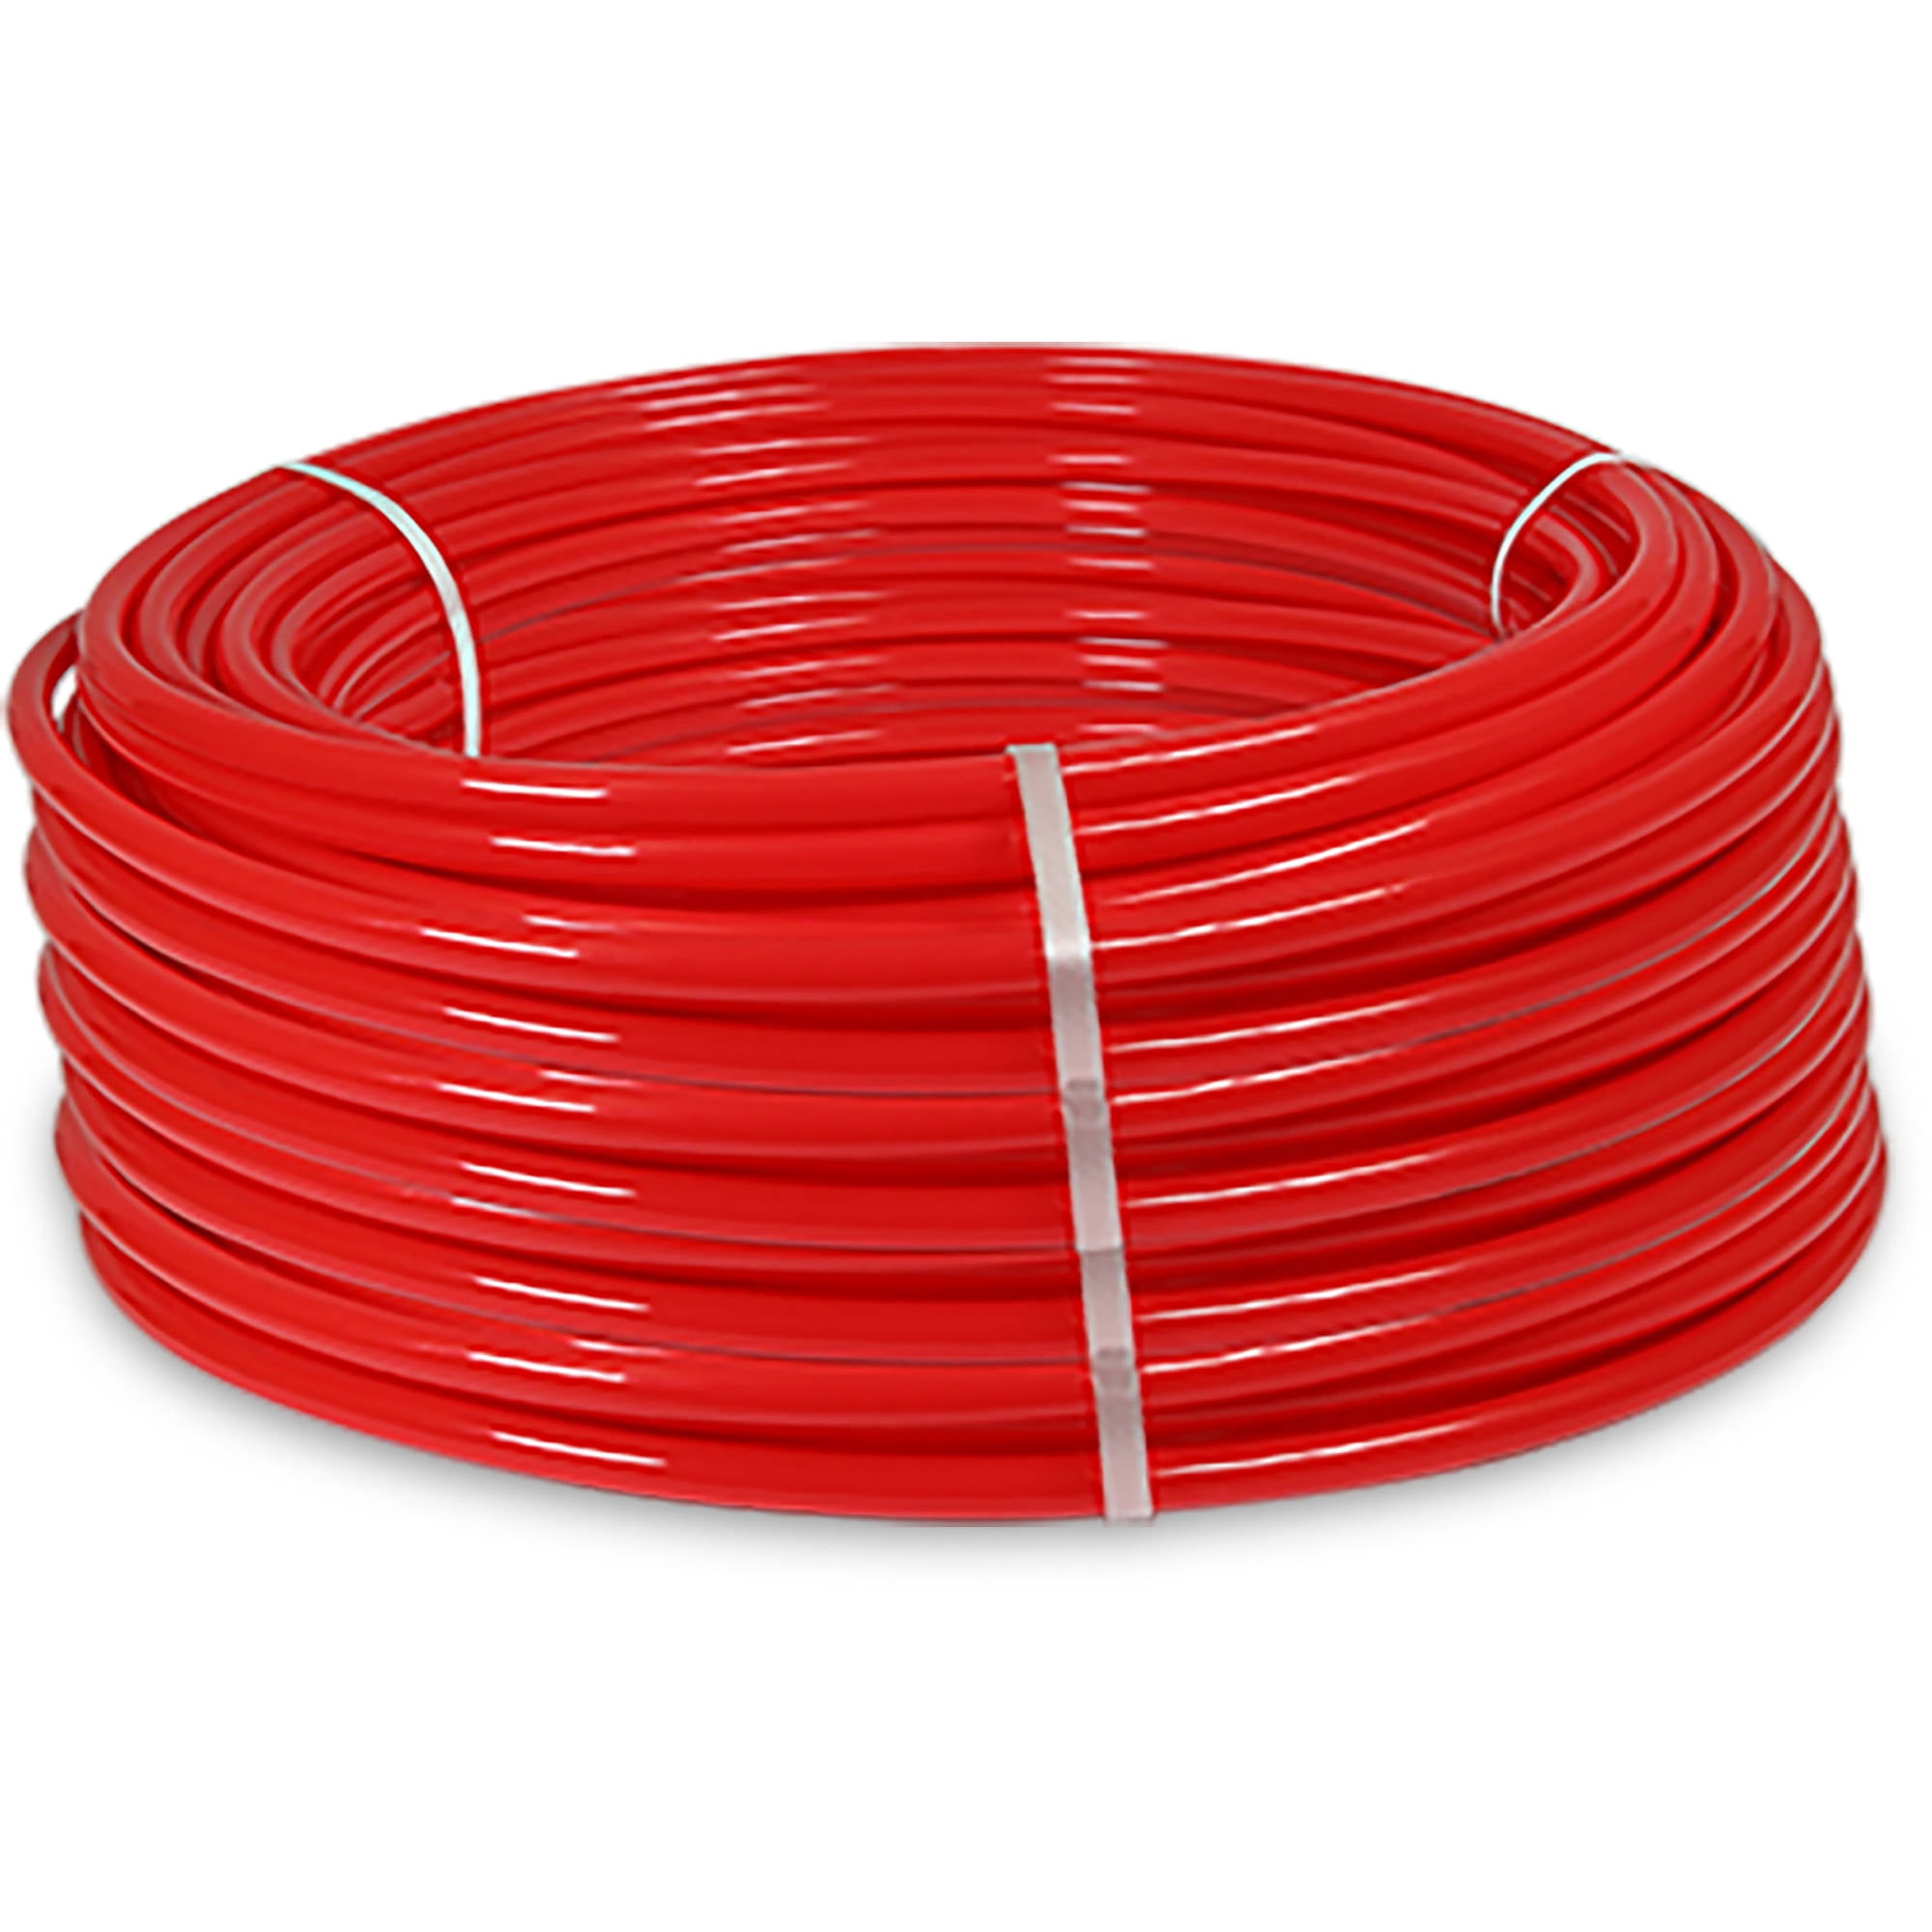 Red 3/4 Inch x 500 Feet Pexflow PFR-R34500 Oxygen Barrier PEX Tubing 